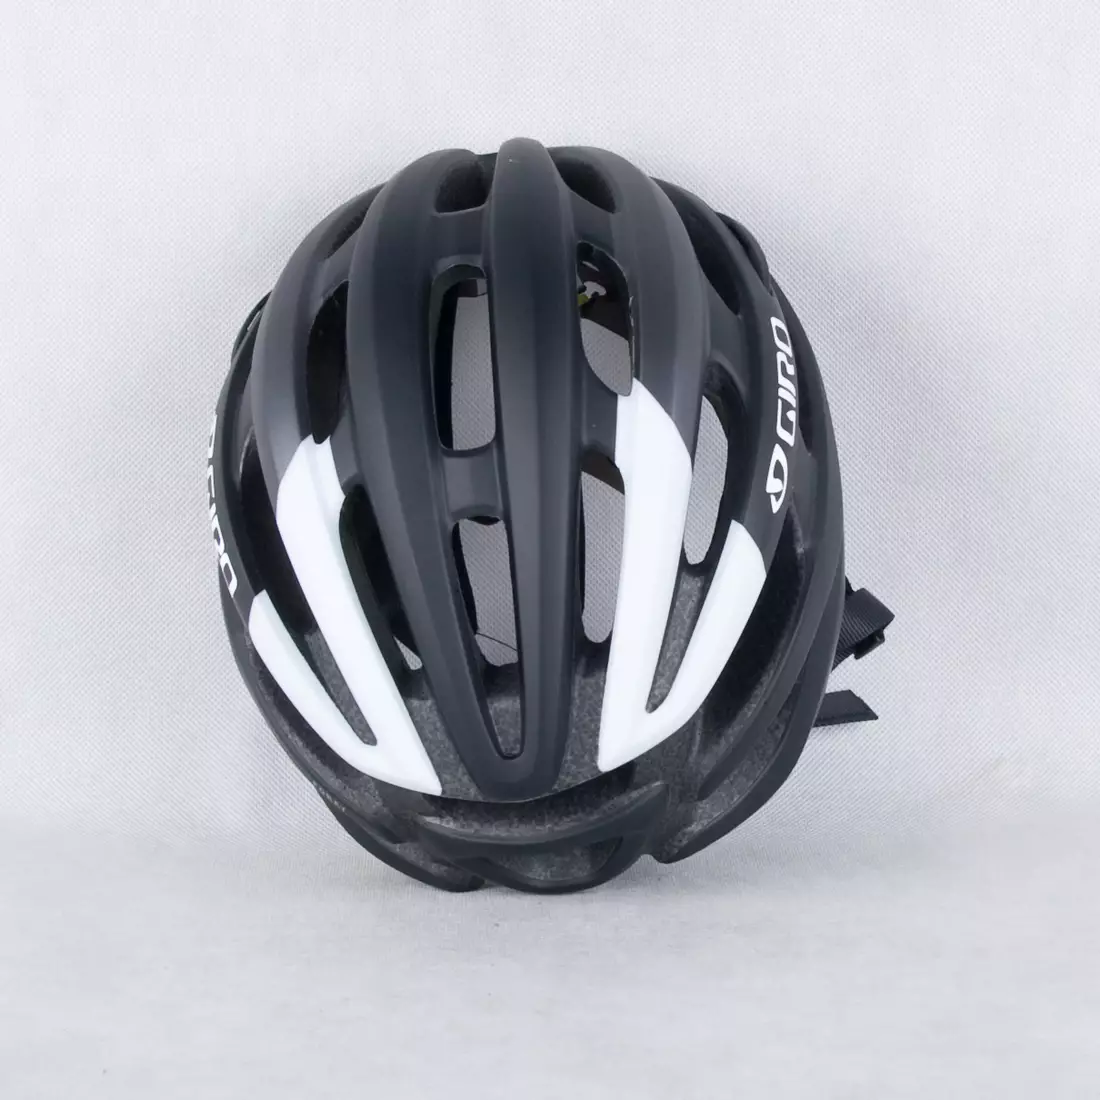 GIRO FORAY MIPS - čierno-biela matná cyklistická prilba